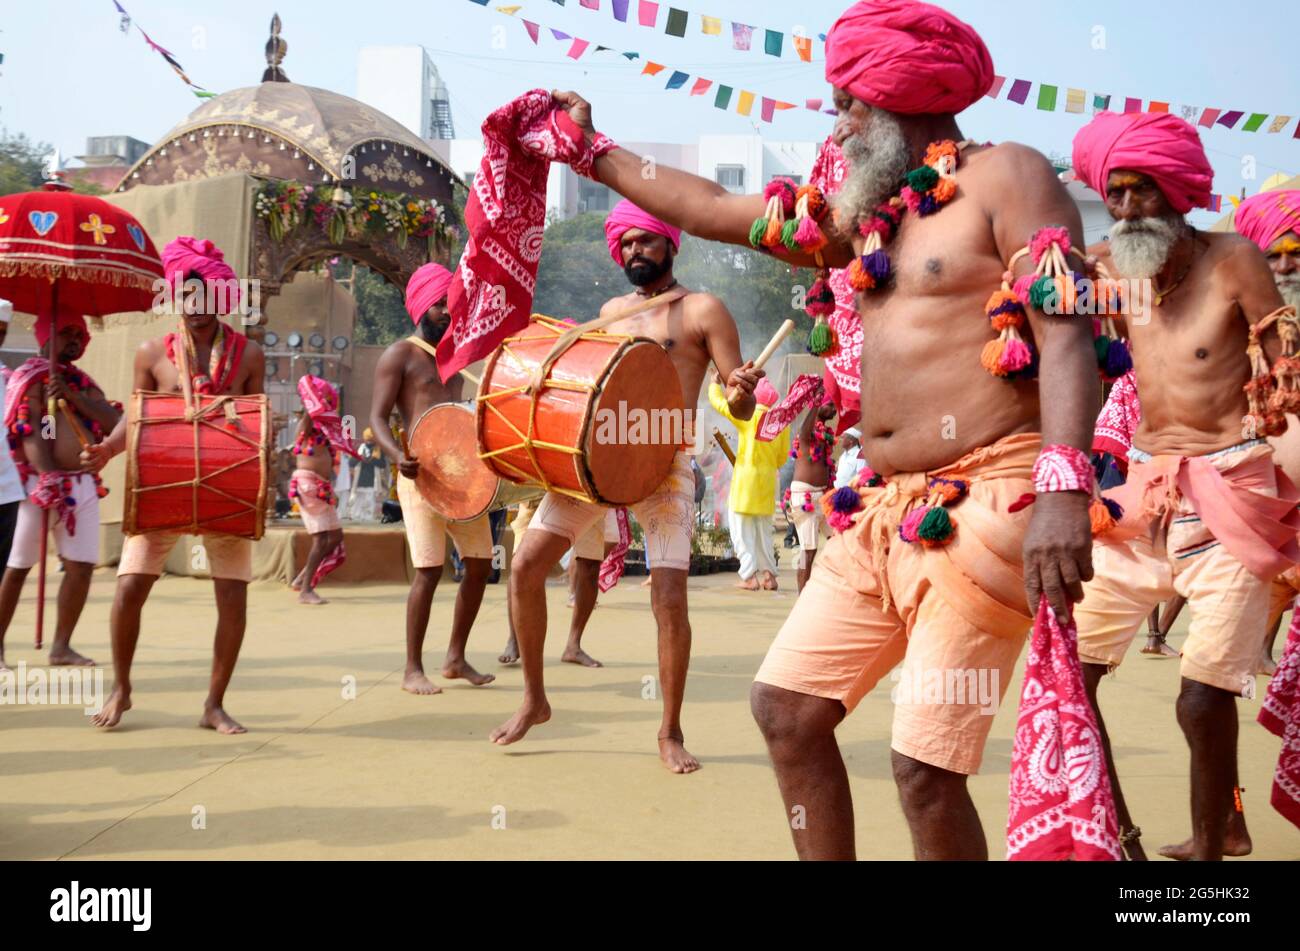 Danse traditionnelle et musique folklorique tribale jouée au festival de Bhimthadi, Pune, Inde, le 21 décembre 2019 Banque D'Images